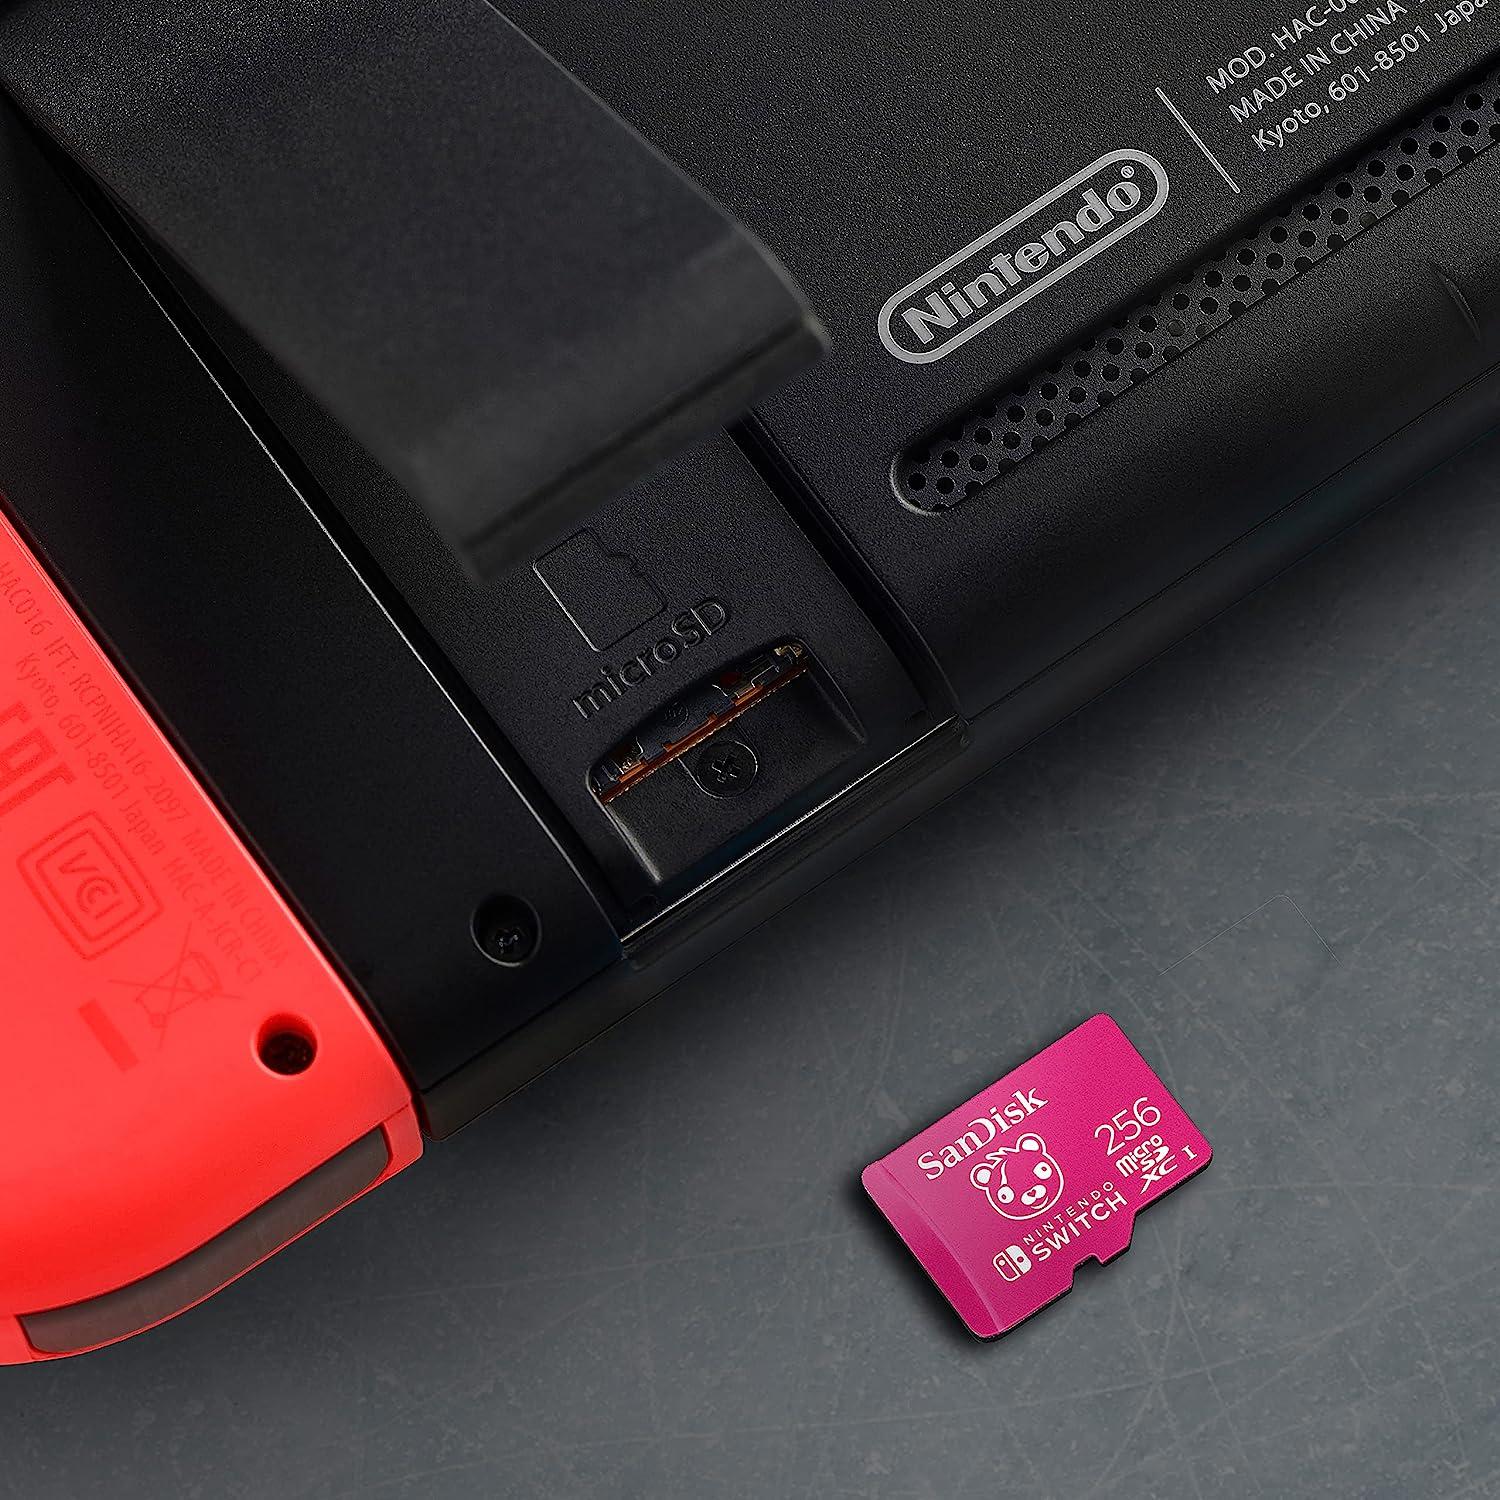  SanDisk 256GB microSDXC-Card, Licensed for Nintendo